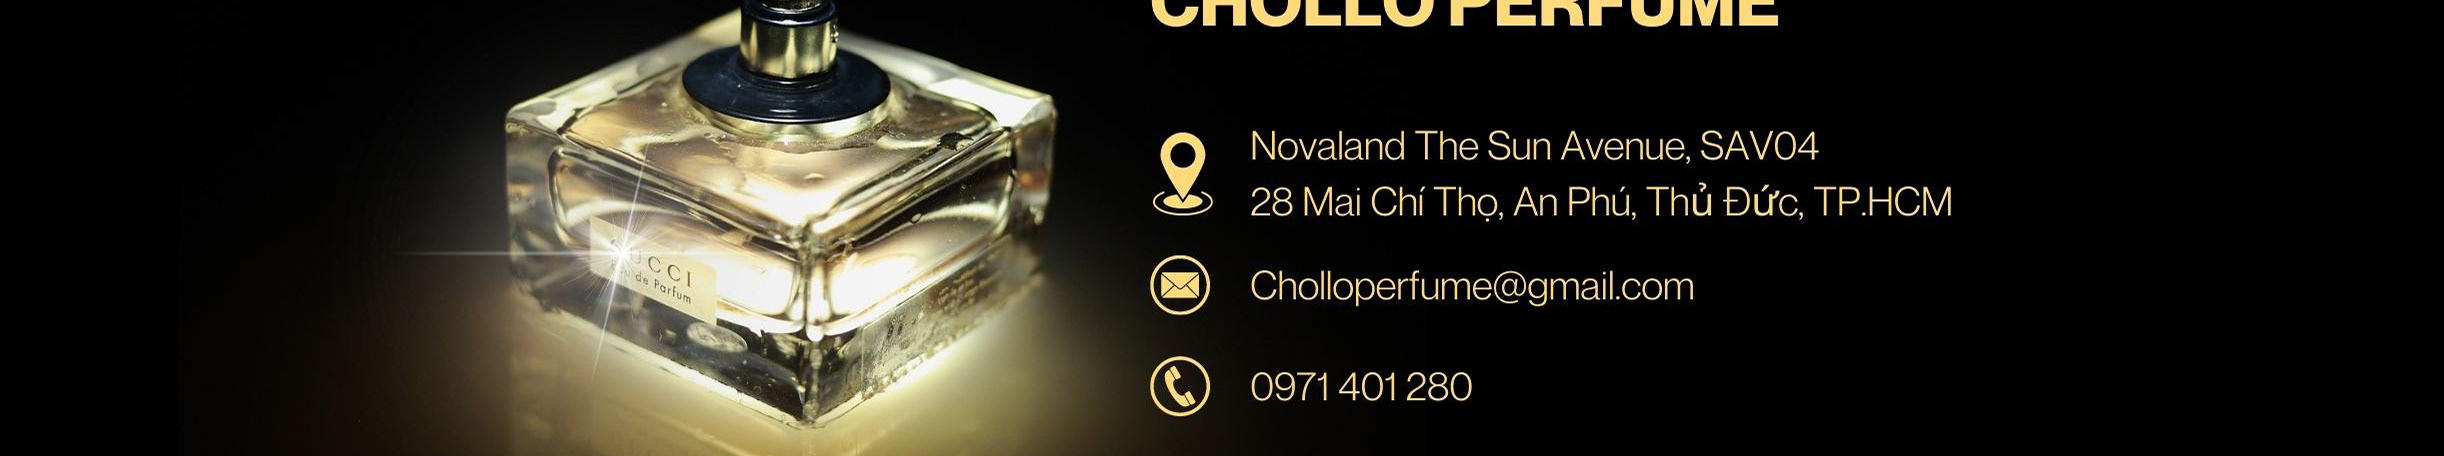 Chollo Perfume's profile banner